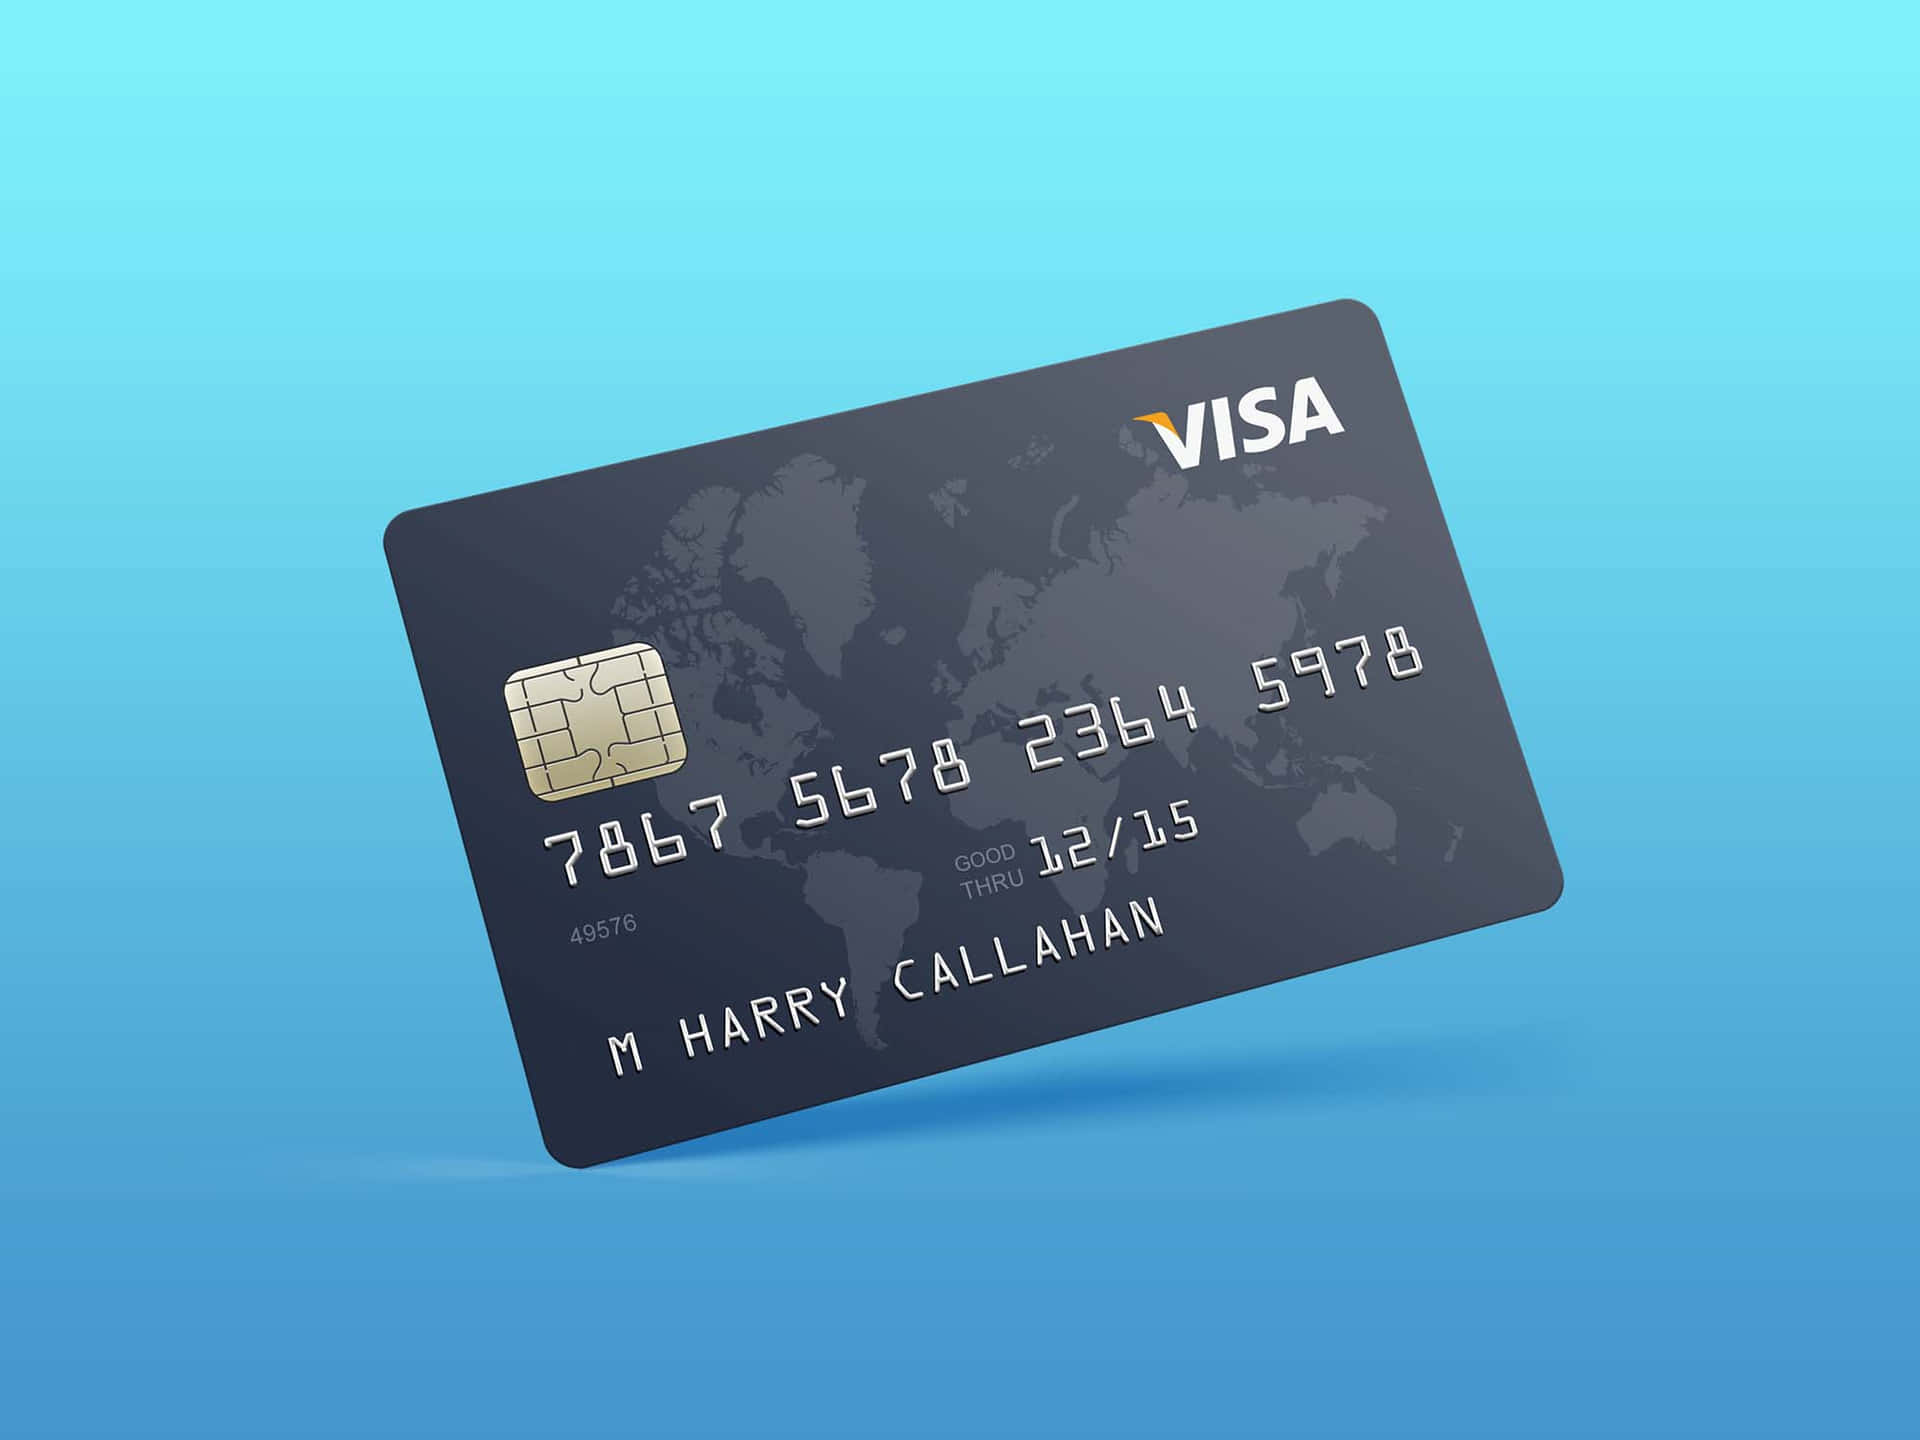 Visa Credit Card On Blue Background